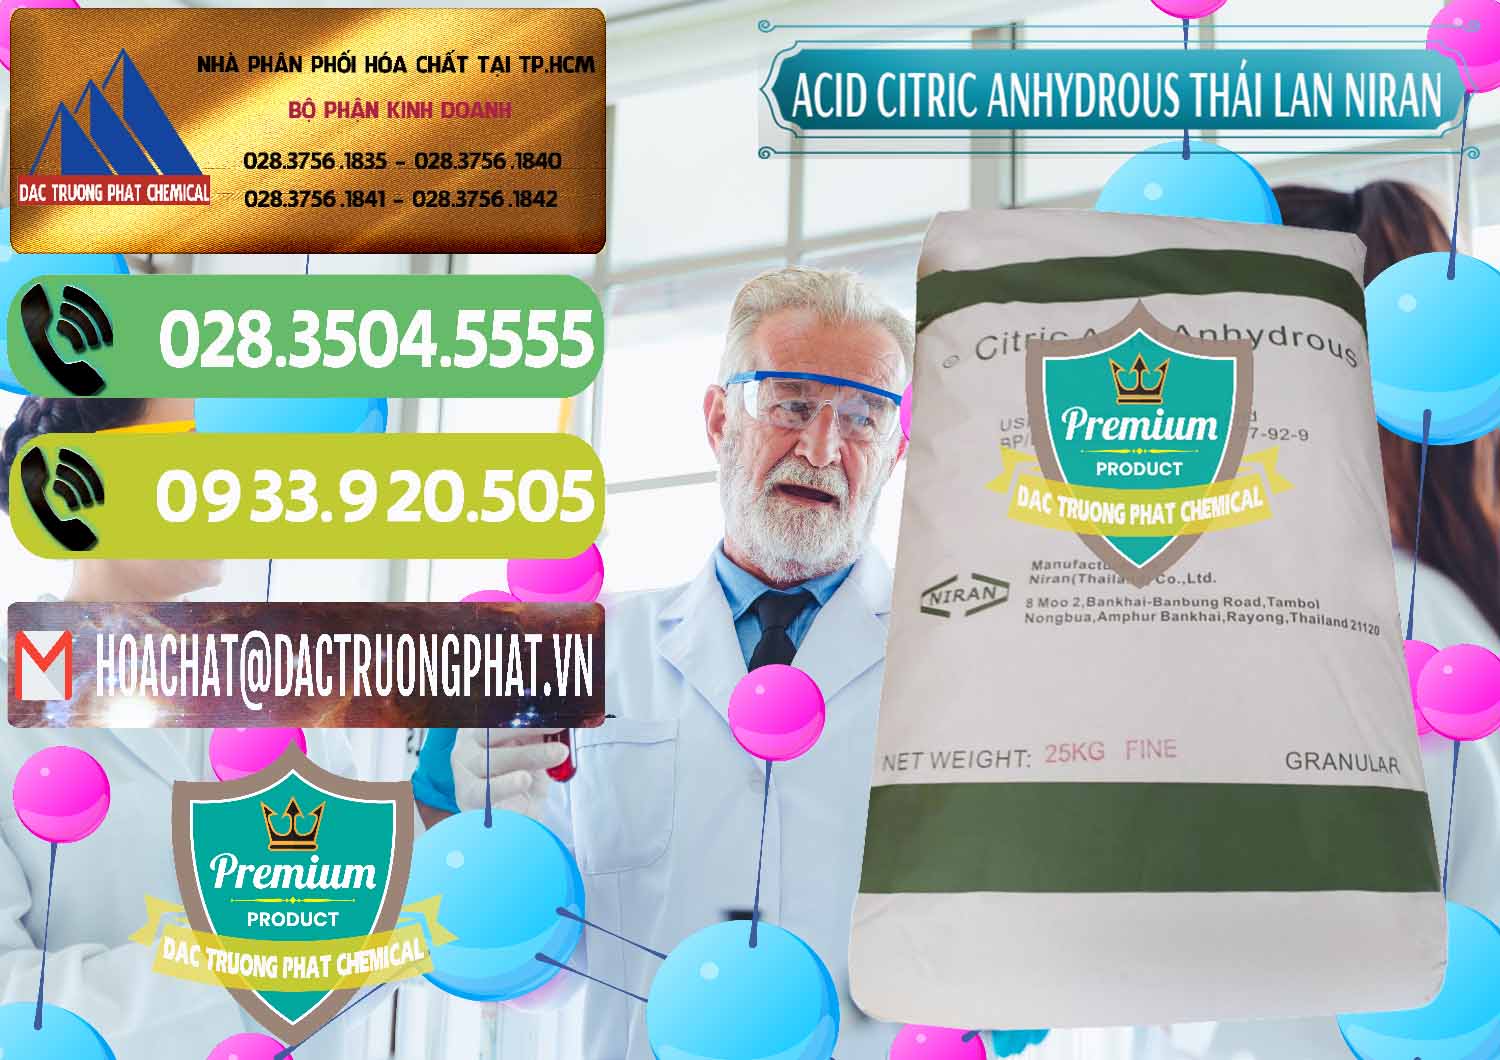 Cty chuyên cung ứng và bán Acid Citric - Axit Citric Anhydrous - Thái Lan Niran - 0231 - Công ty chuyên cung cấp - bán hóa chất tại TP.HCM - hoachatmientay.vn